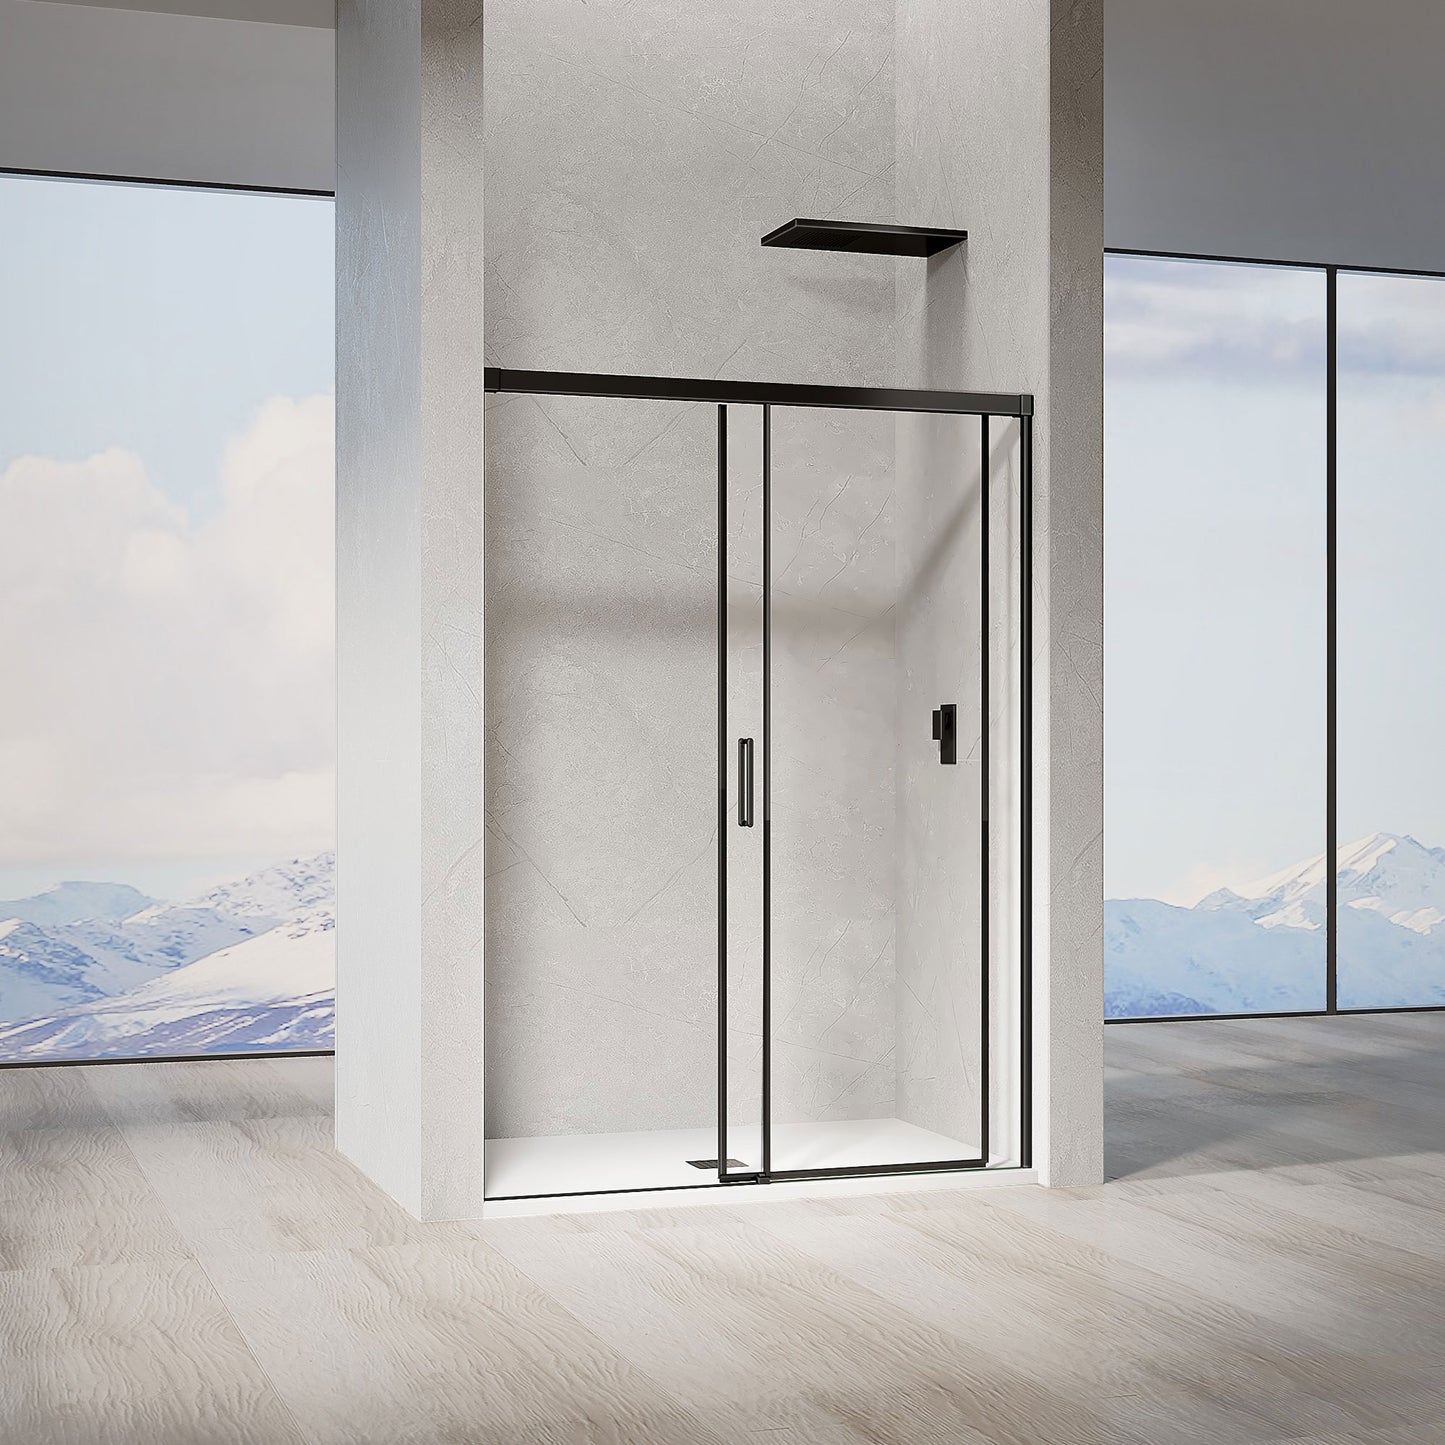 Porte de douche pour installation en niche profilés noirs mat ouverture coulissante ouverte